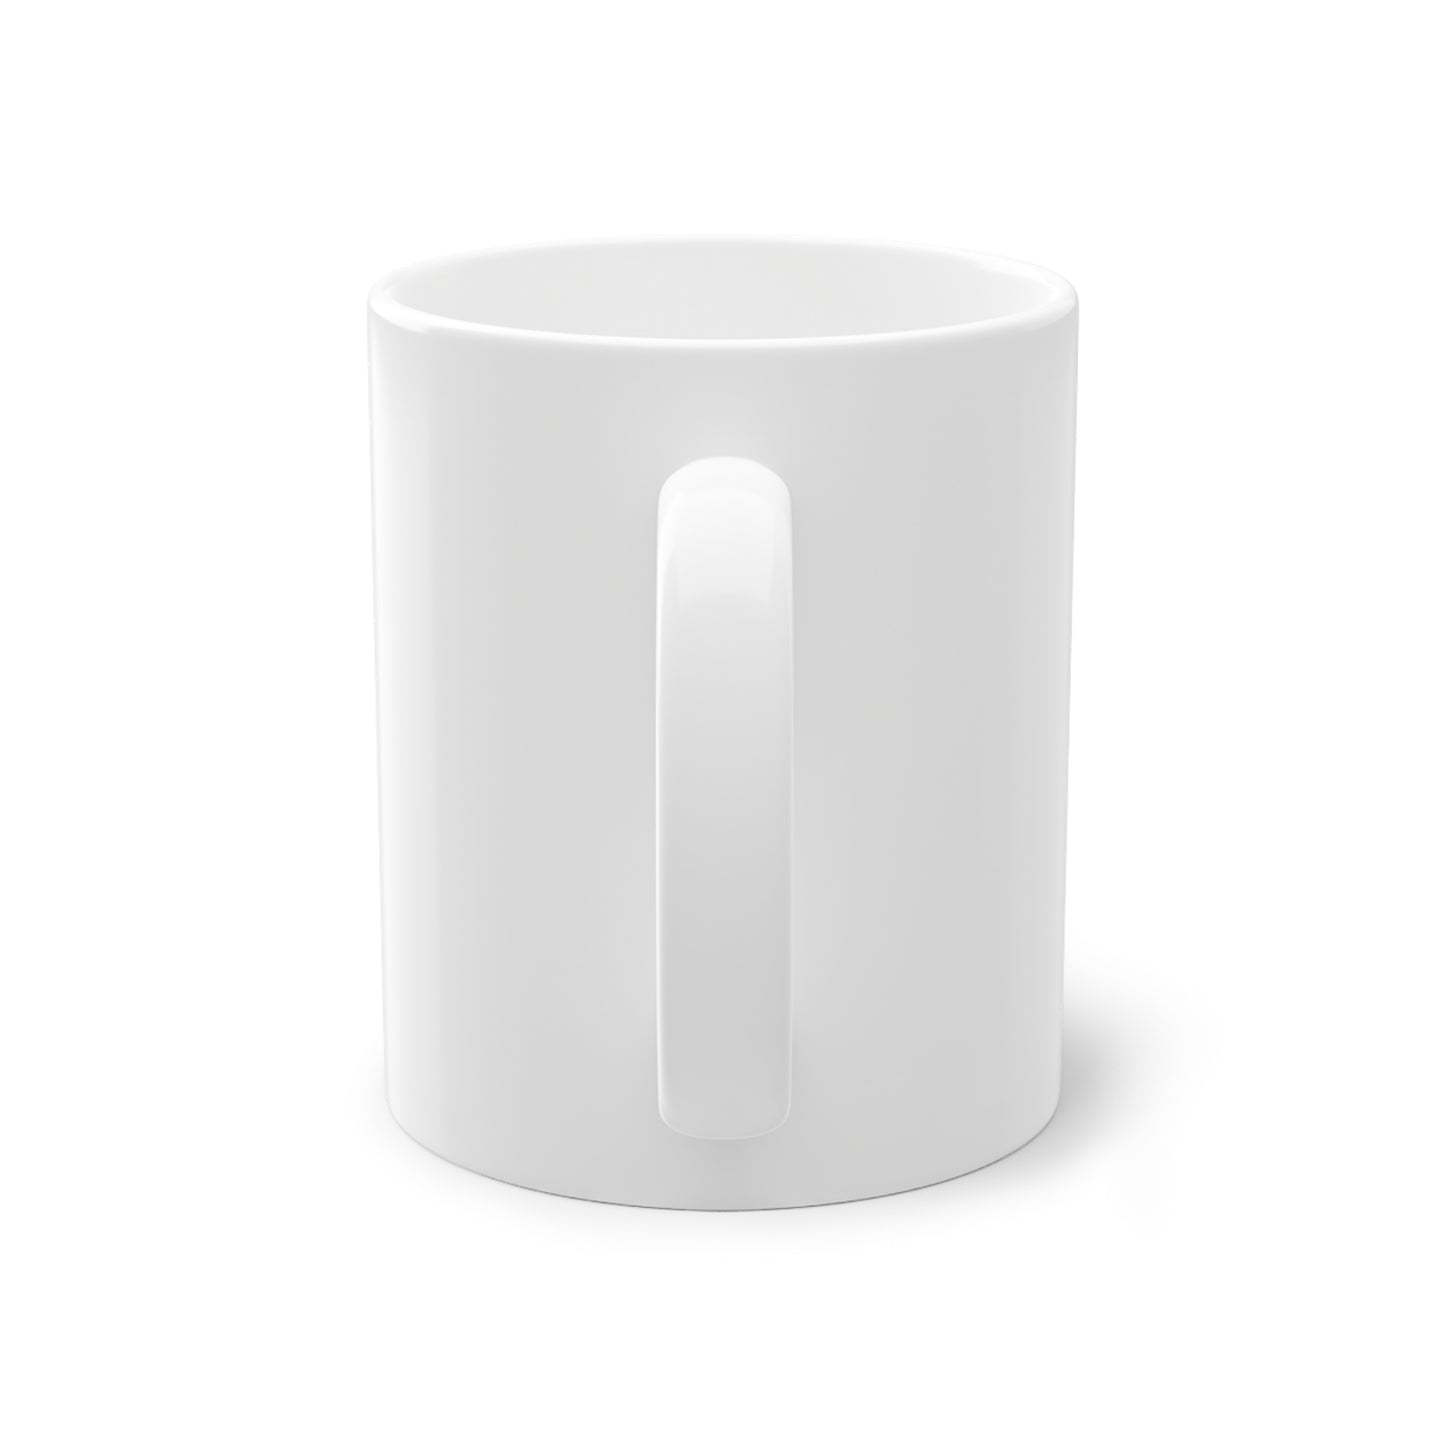 Foggy Project's "Ahi! Buongiorno" Ceramic Mug White